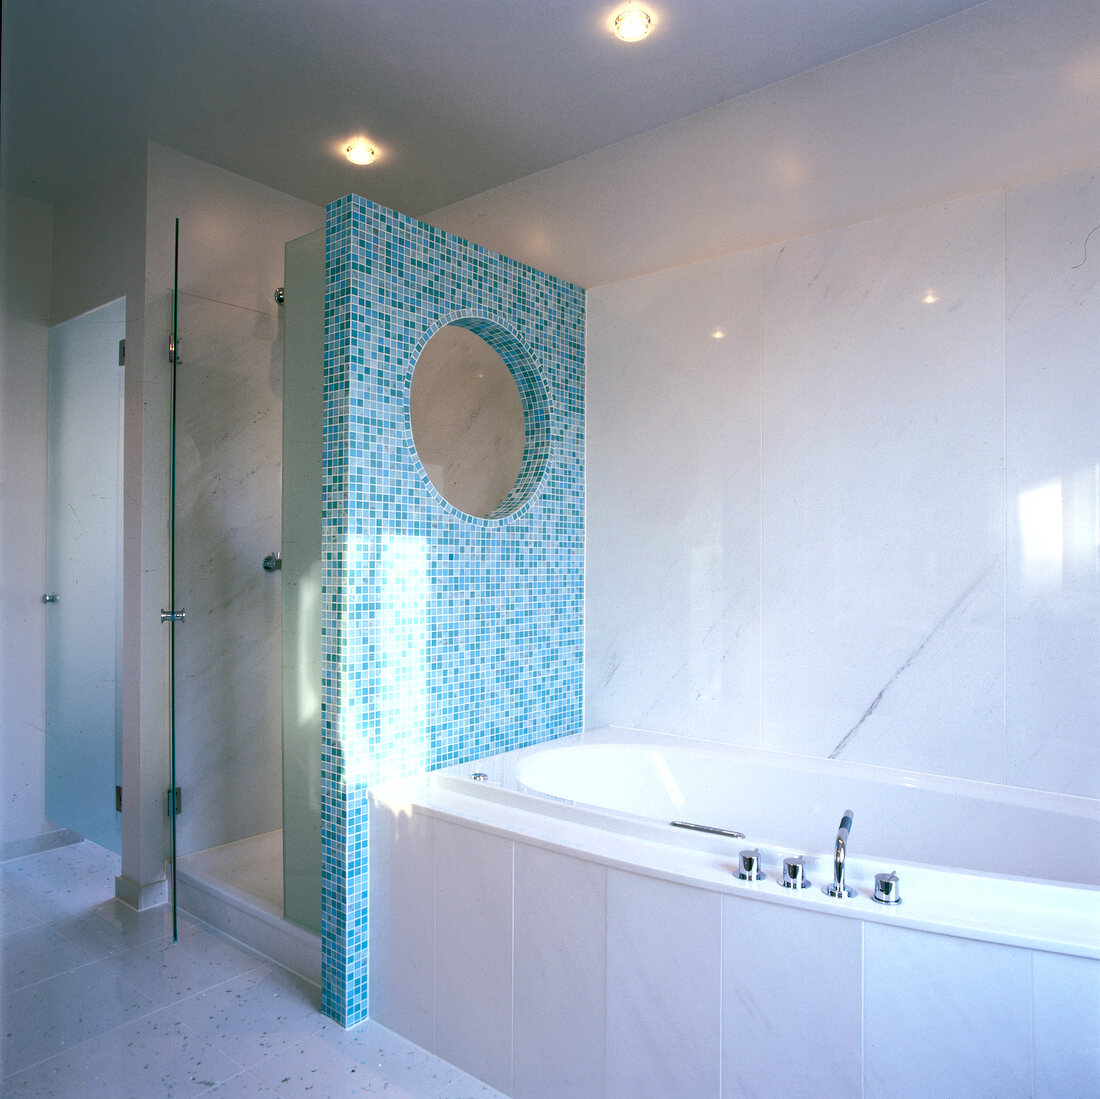 Trennwand zwischen Dusche und Wanne aus  türkisblauem Mosaik,Wanne